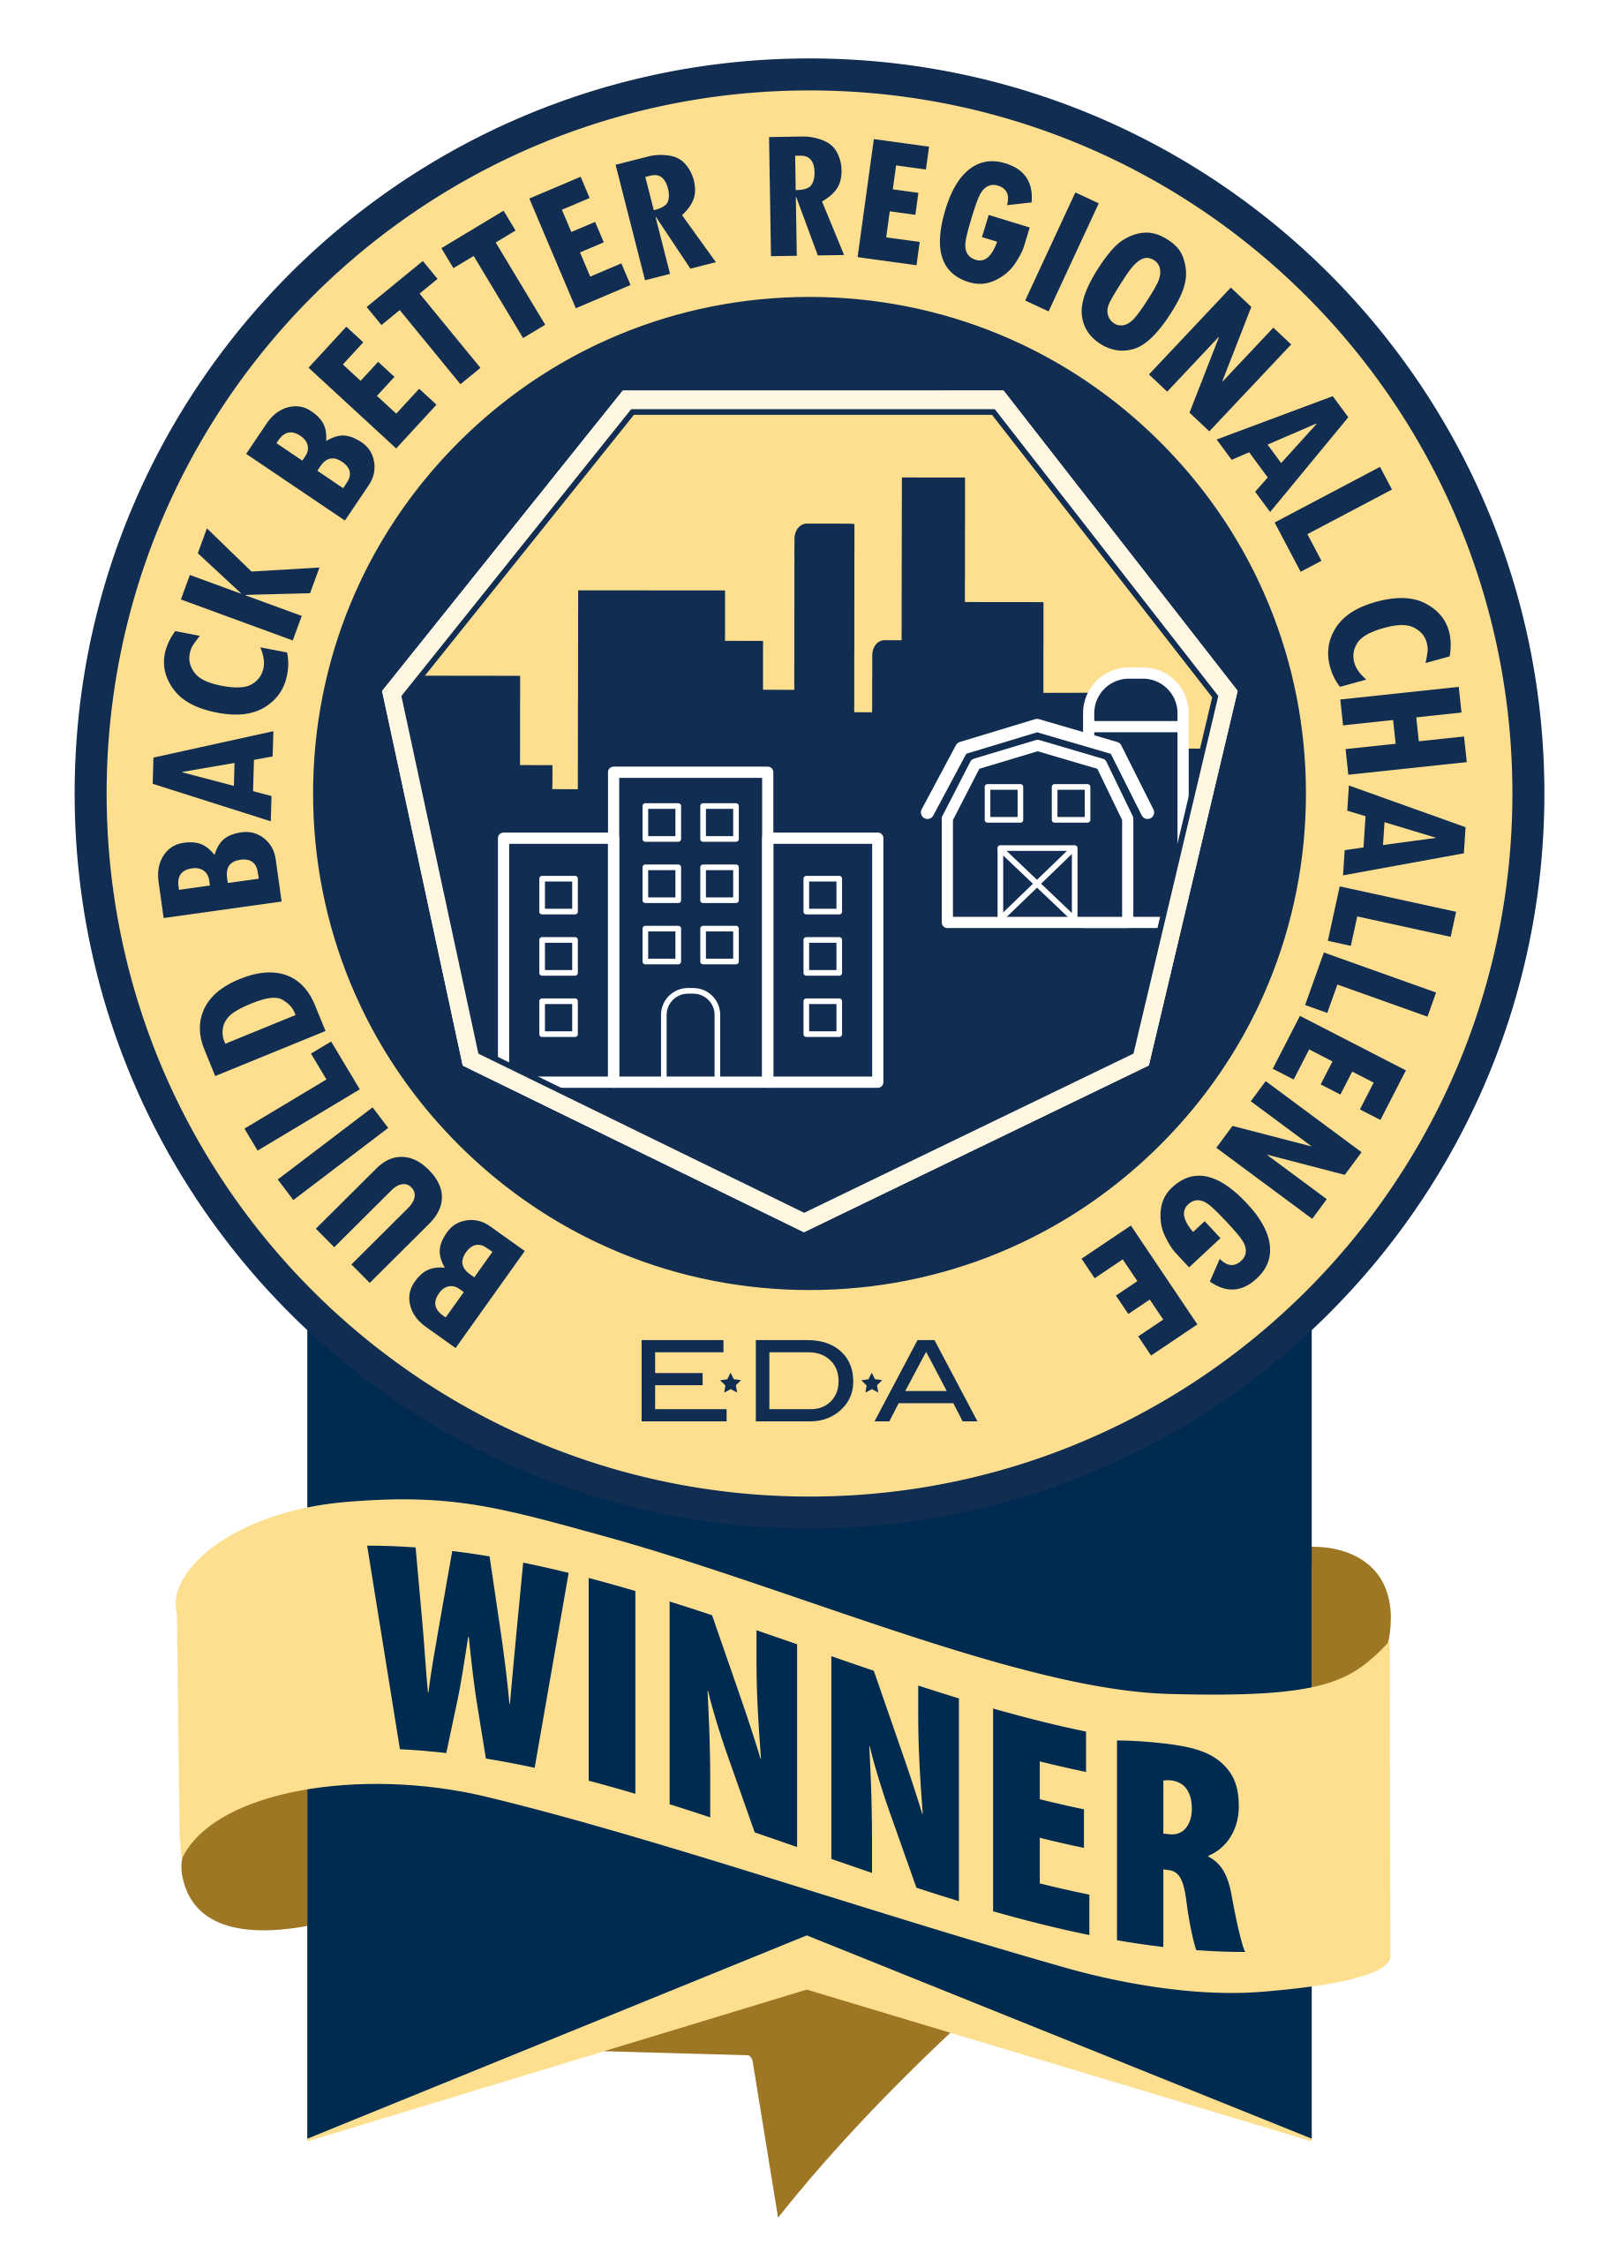 build back better regional challenge winner badge